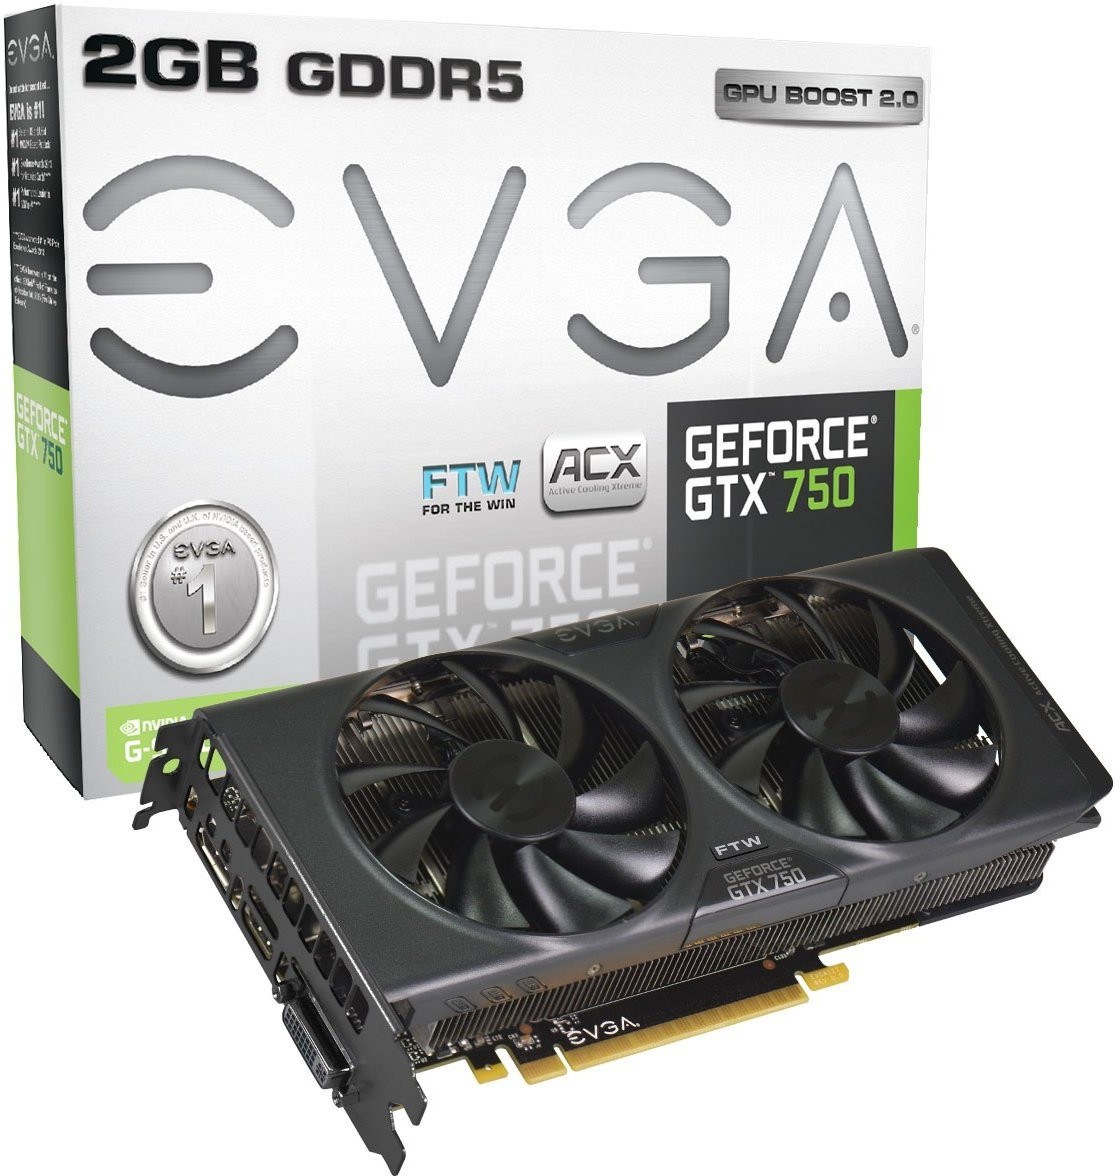 Immagine pubblicata in relazione al seguente contenuto: EVGA introduce la card non reference GeForce GTX 750 FTW 2GB | Nome immagine: news20959_EVGA-GeForce-GTX-750-FTW_3.jpg